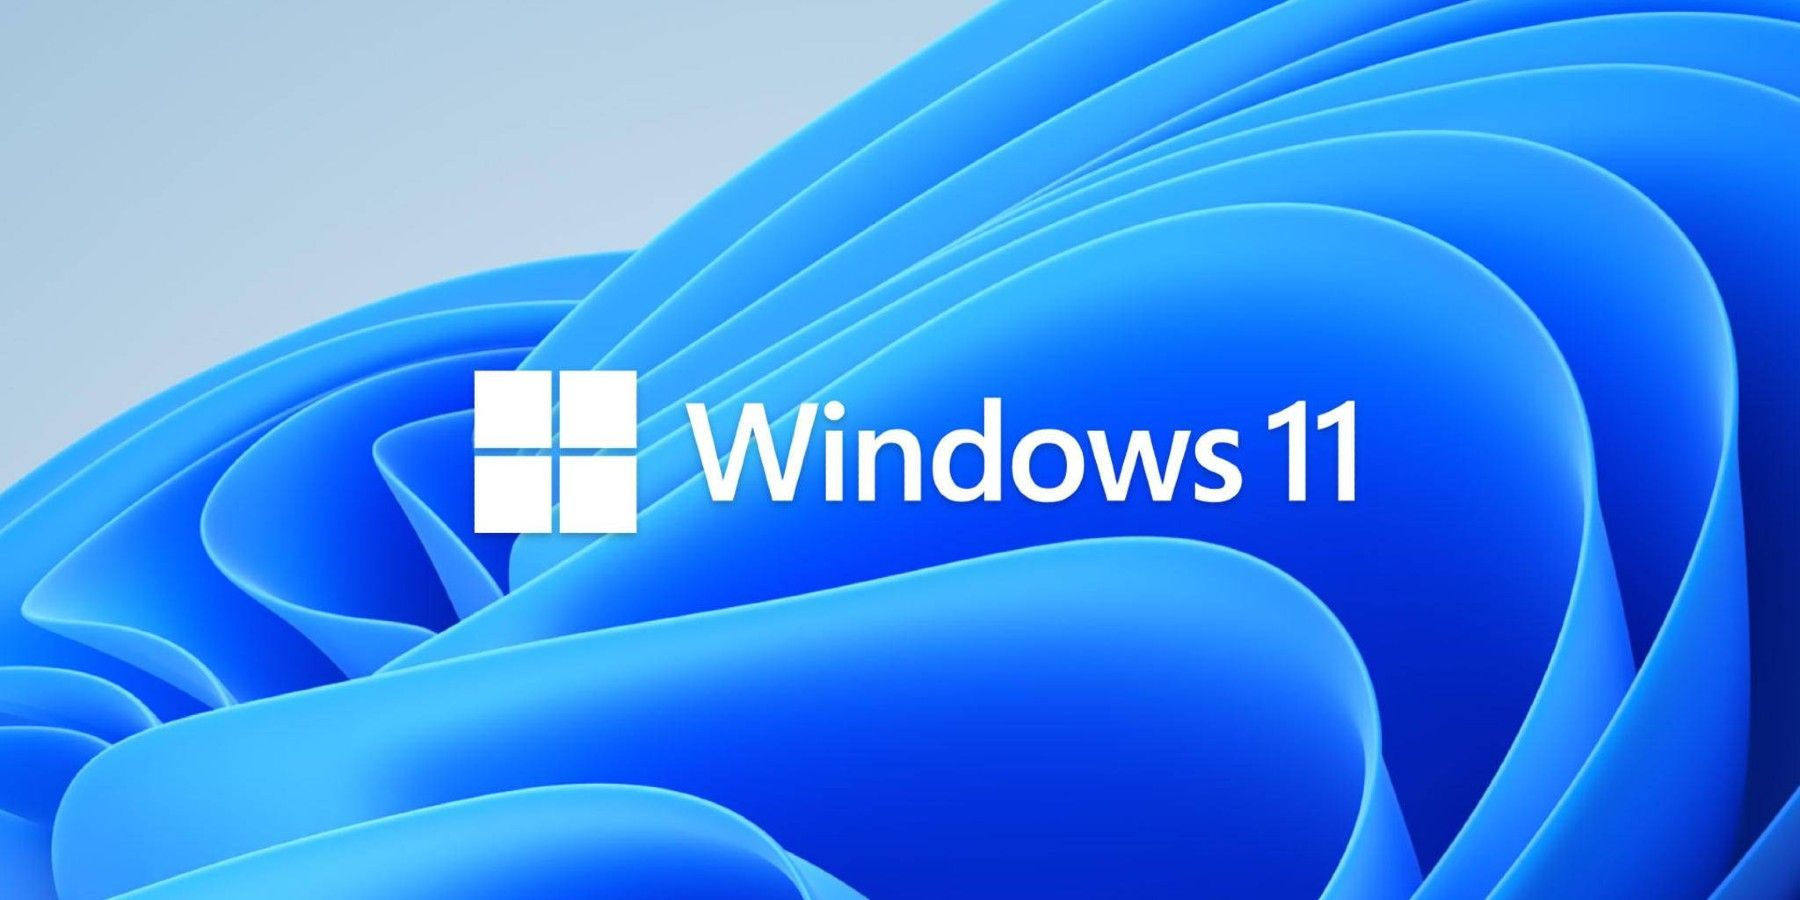 windows 11 logo ribbon background